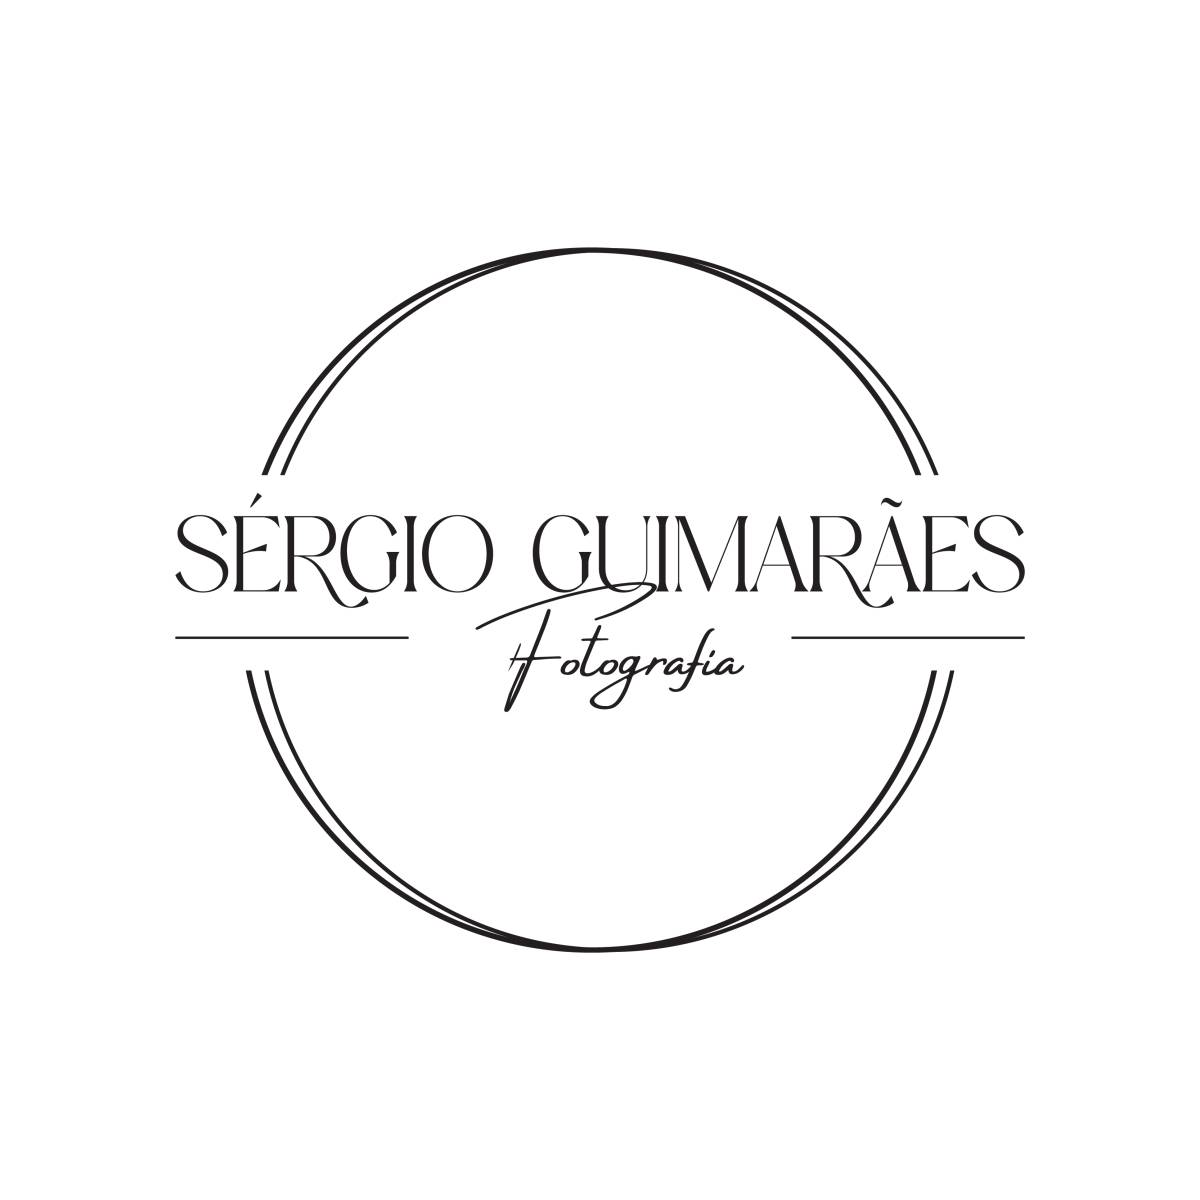 Sérgio Guimarães Fotografia - Torres Novas - Digitalização de Fotografias